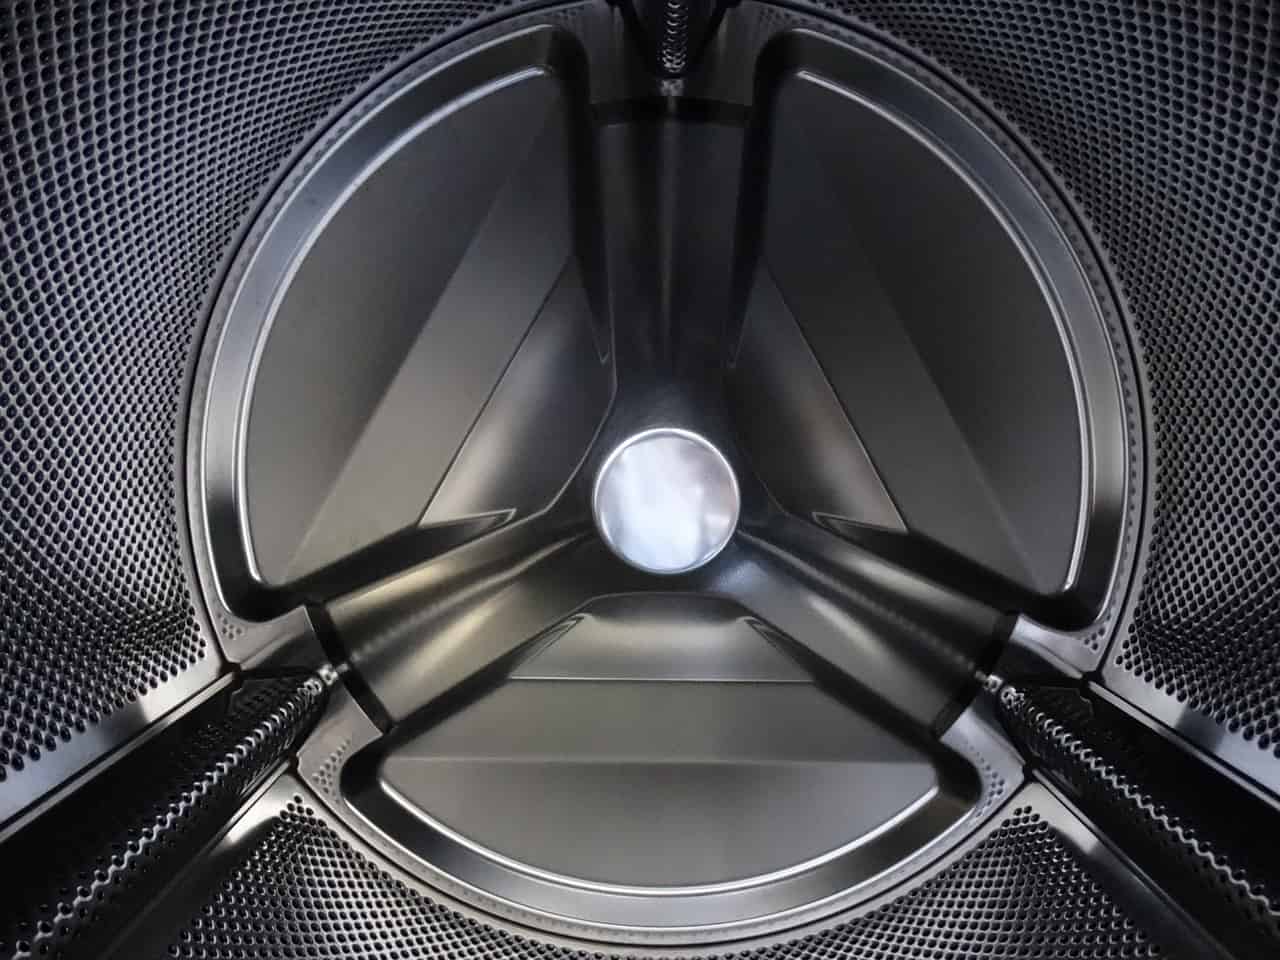 inside a washing machine drum